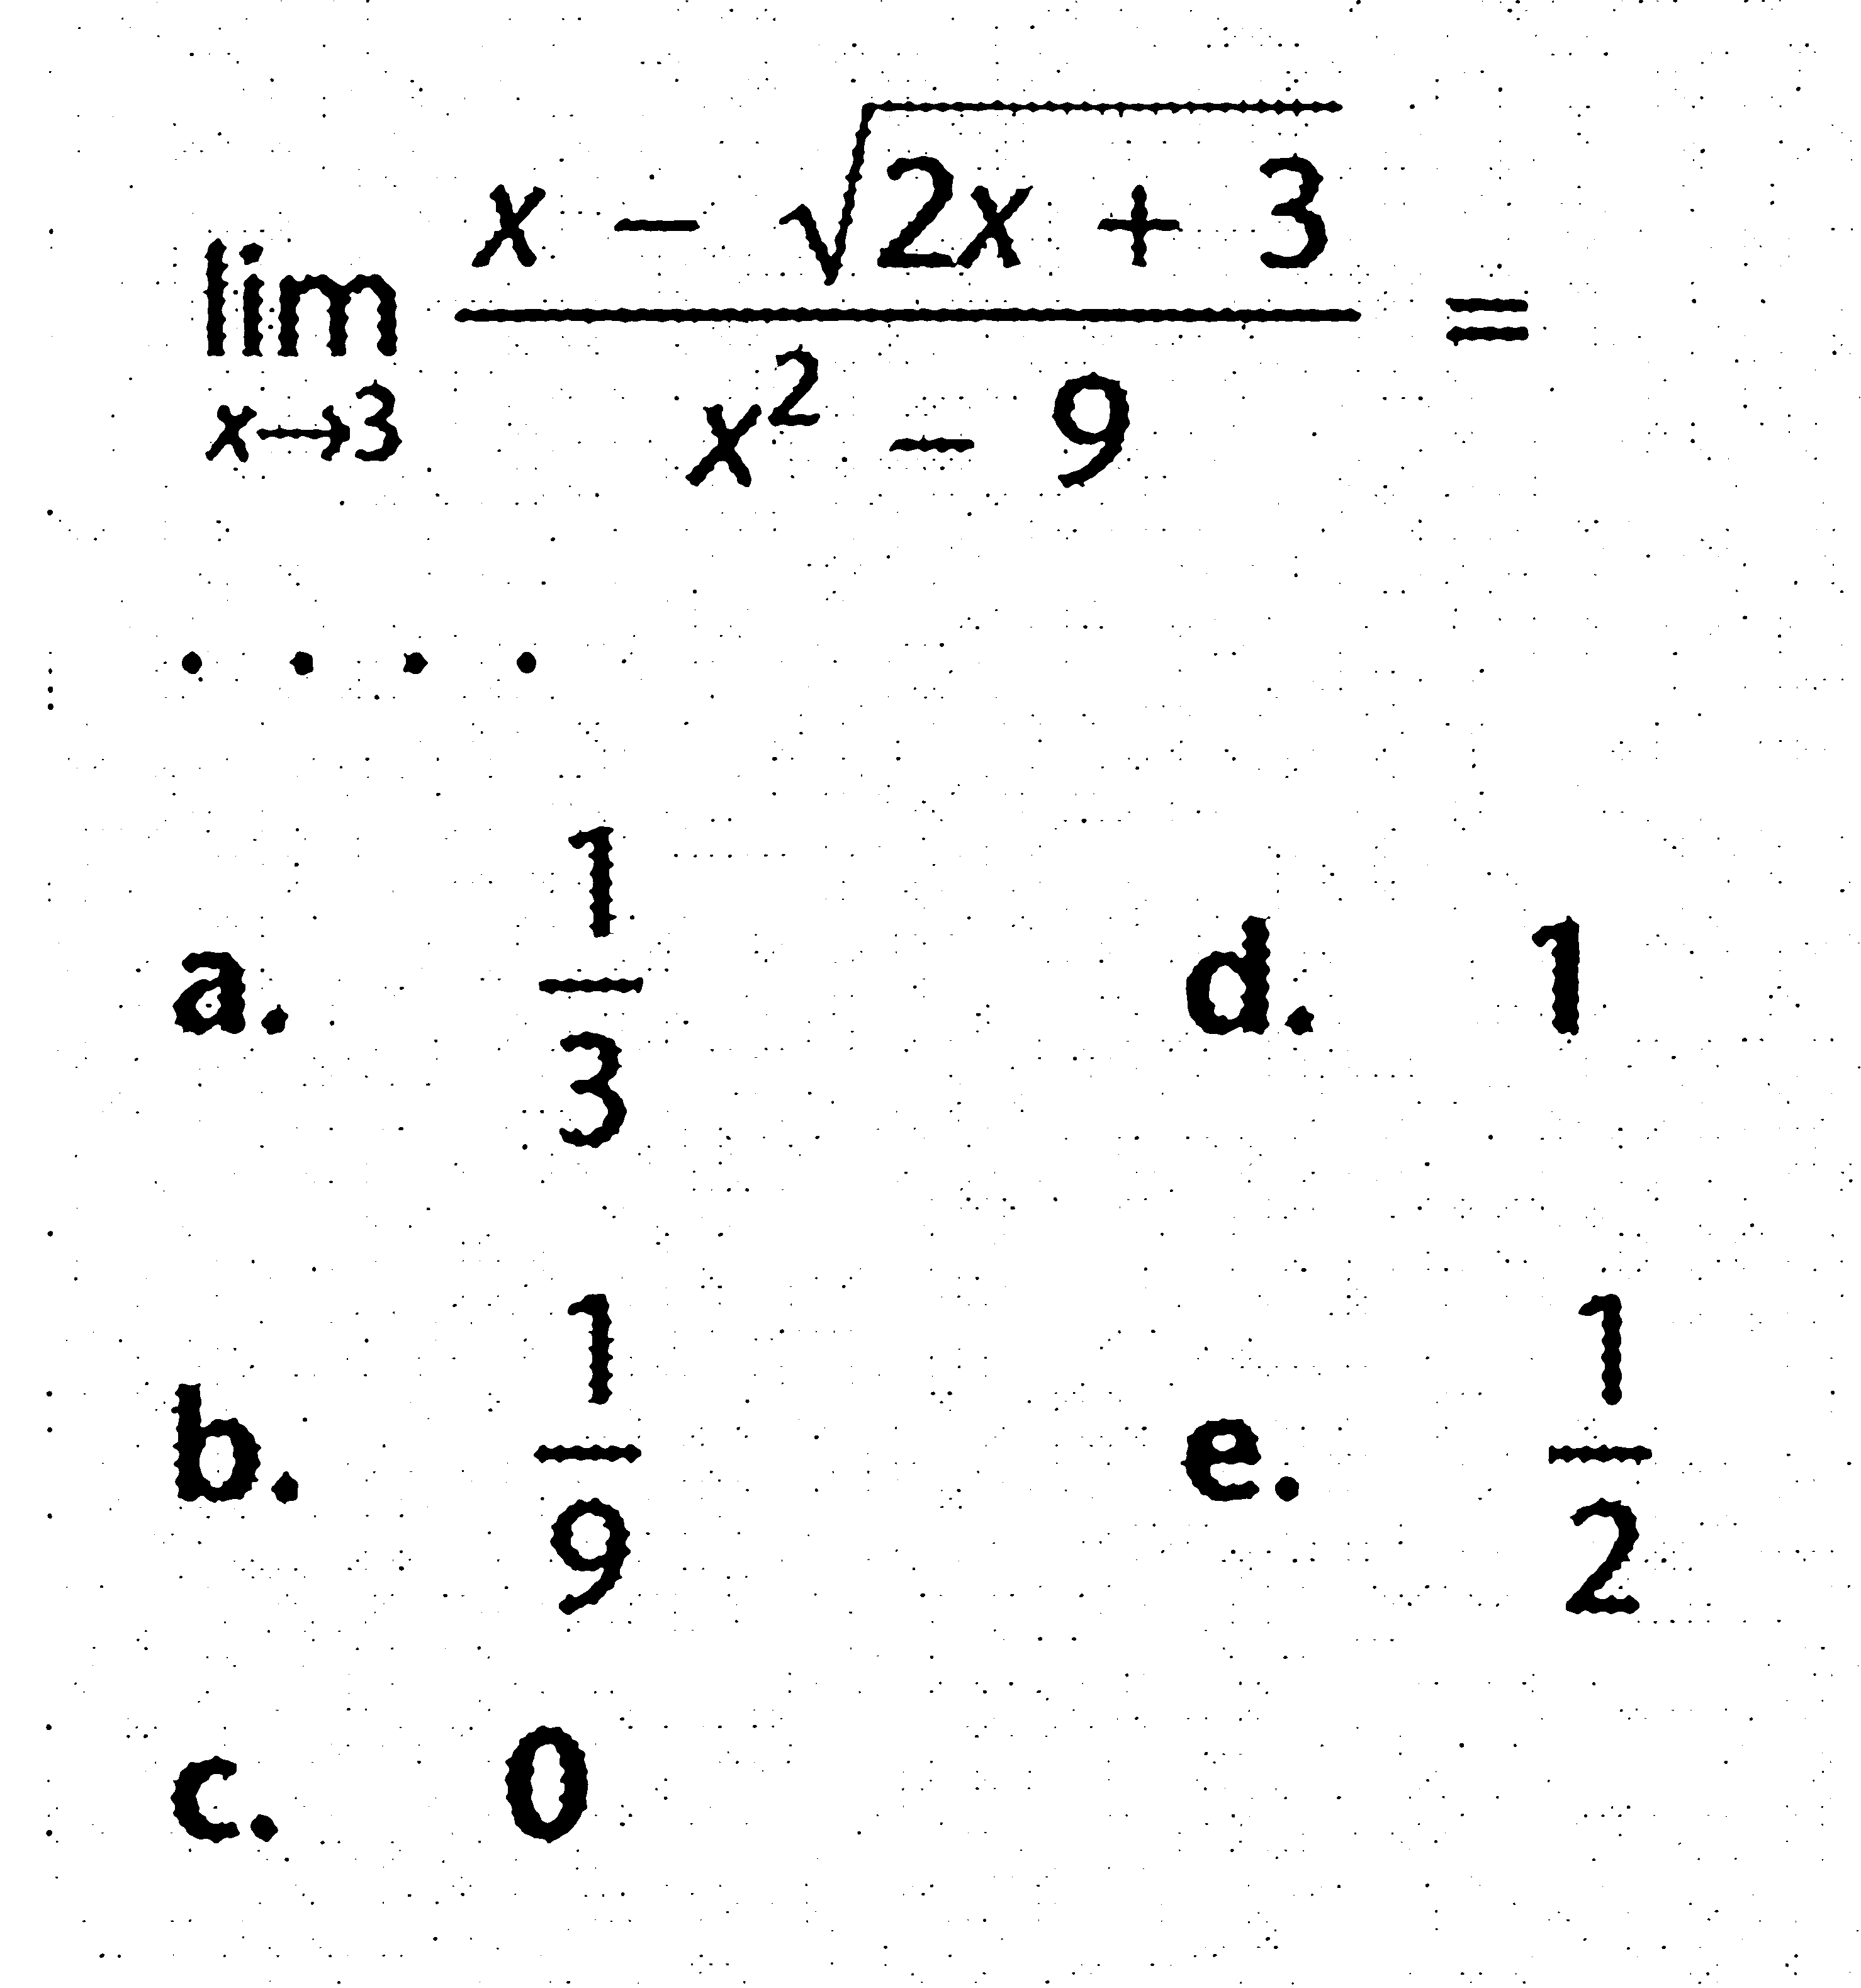 lim x->3 (x-akar(2x+3))/(x^2-9)=